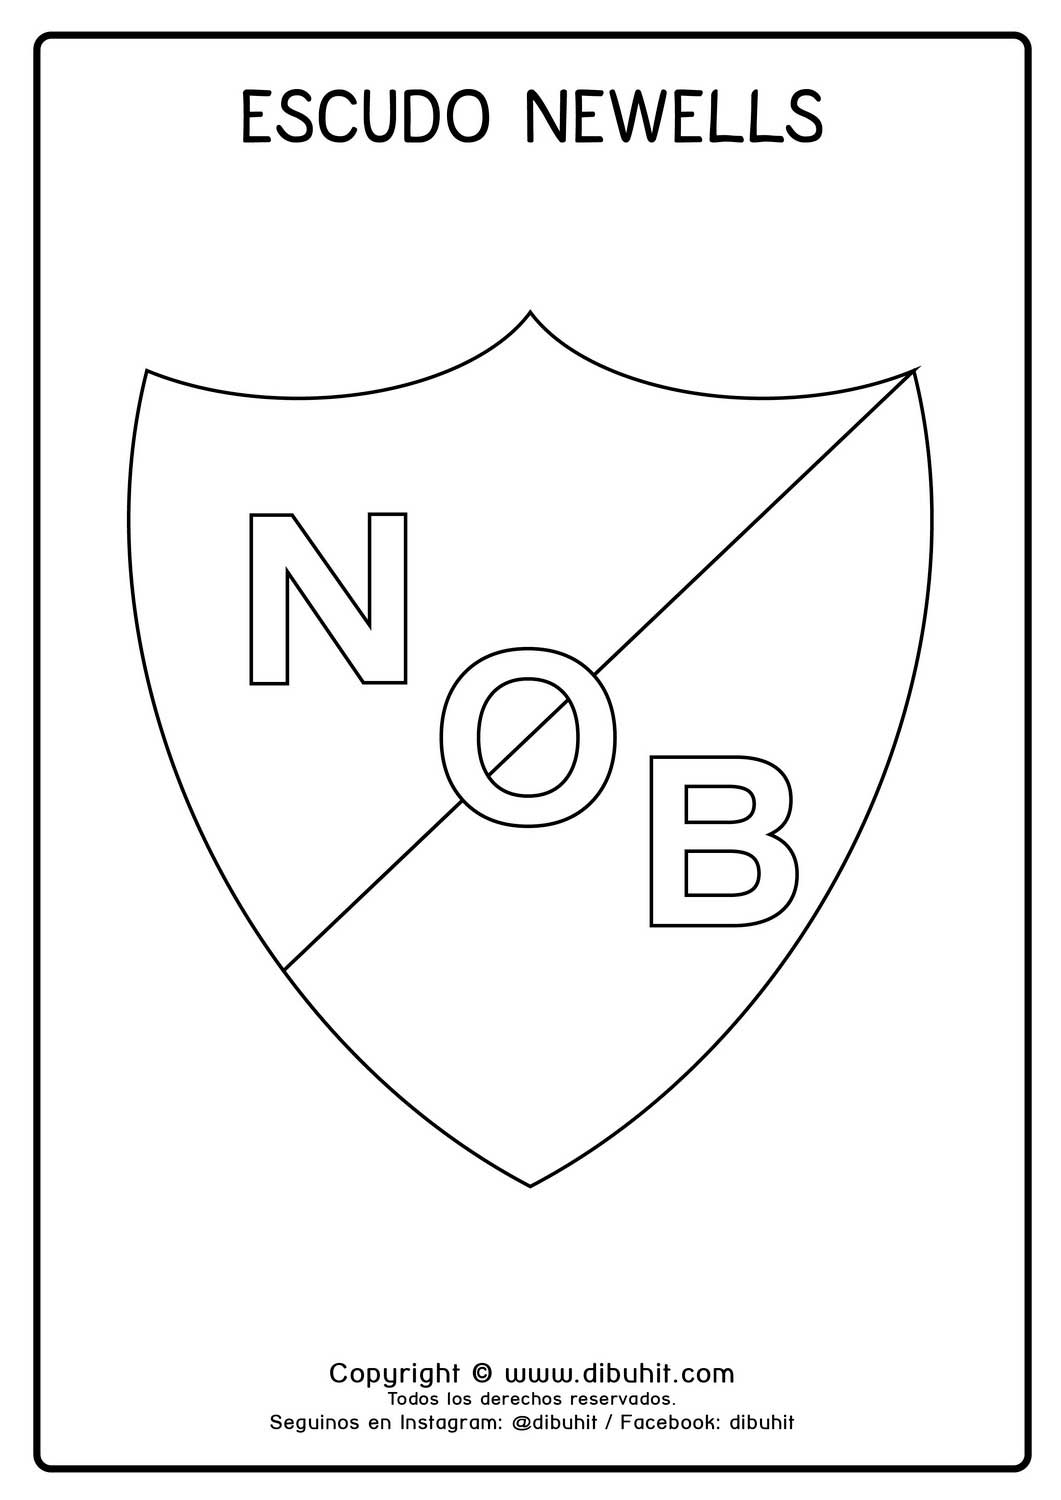 Escudo de futbol para colorear de newells old boys de rosario